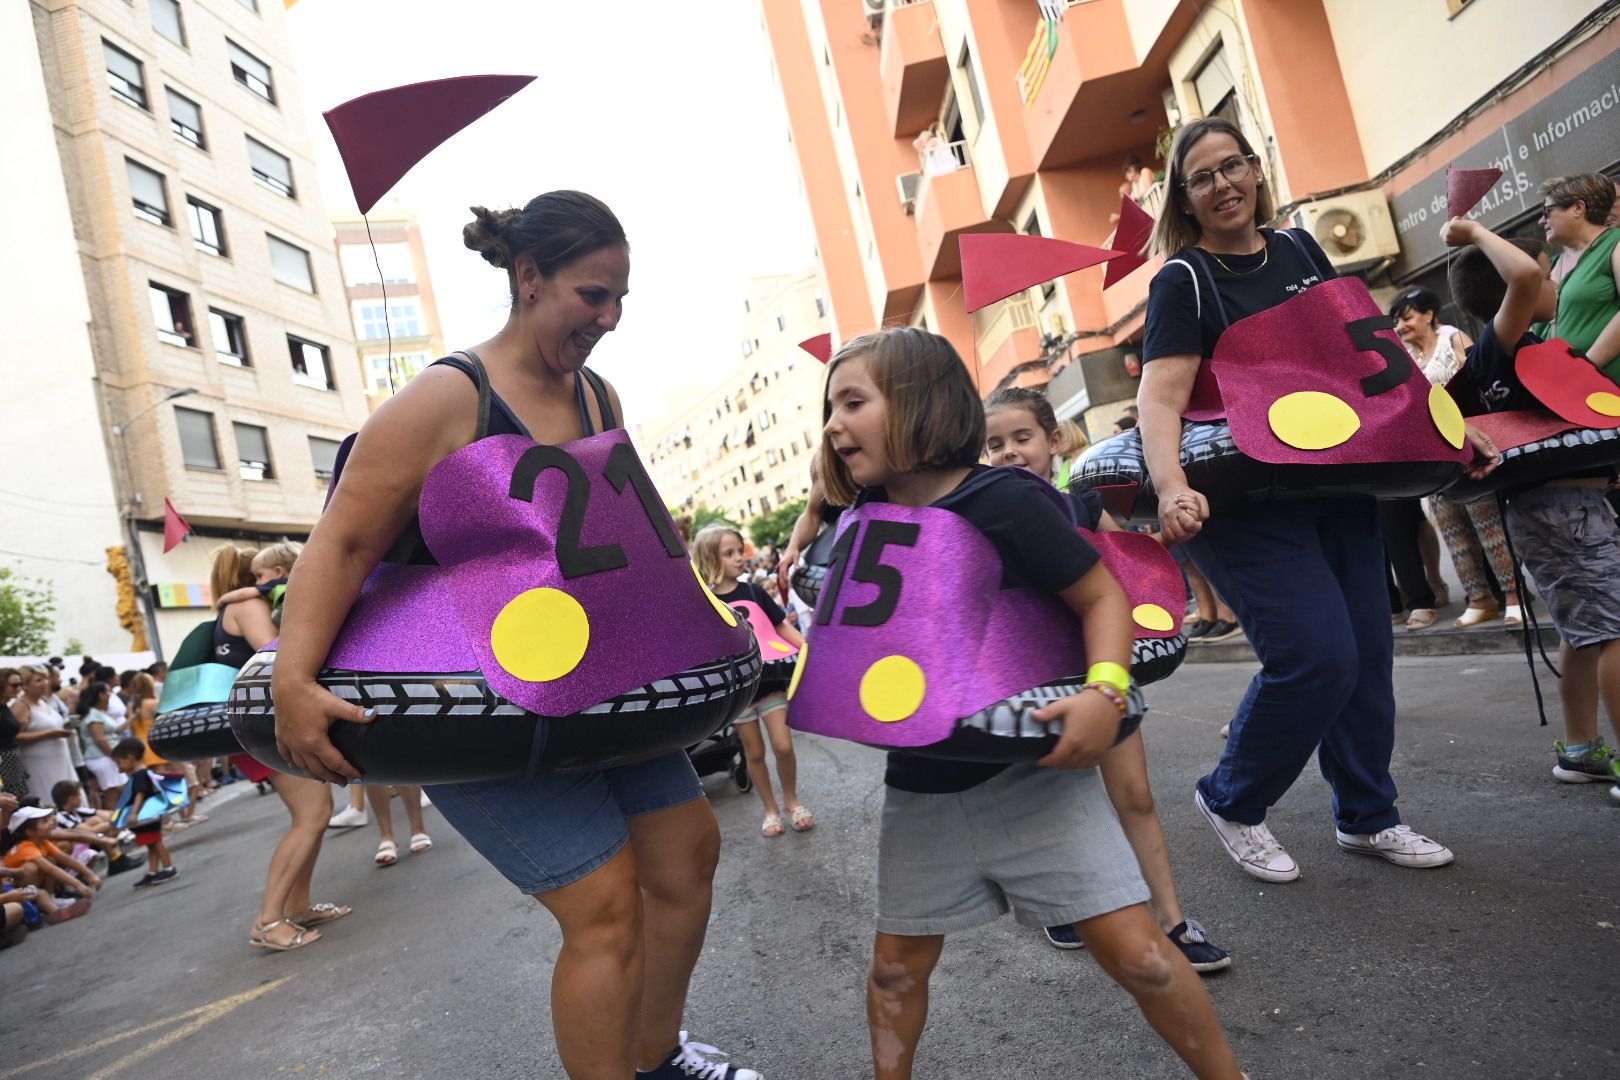 Las mejores imágenes del desfile y la entrada del toro por Sant Pere en el Grau